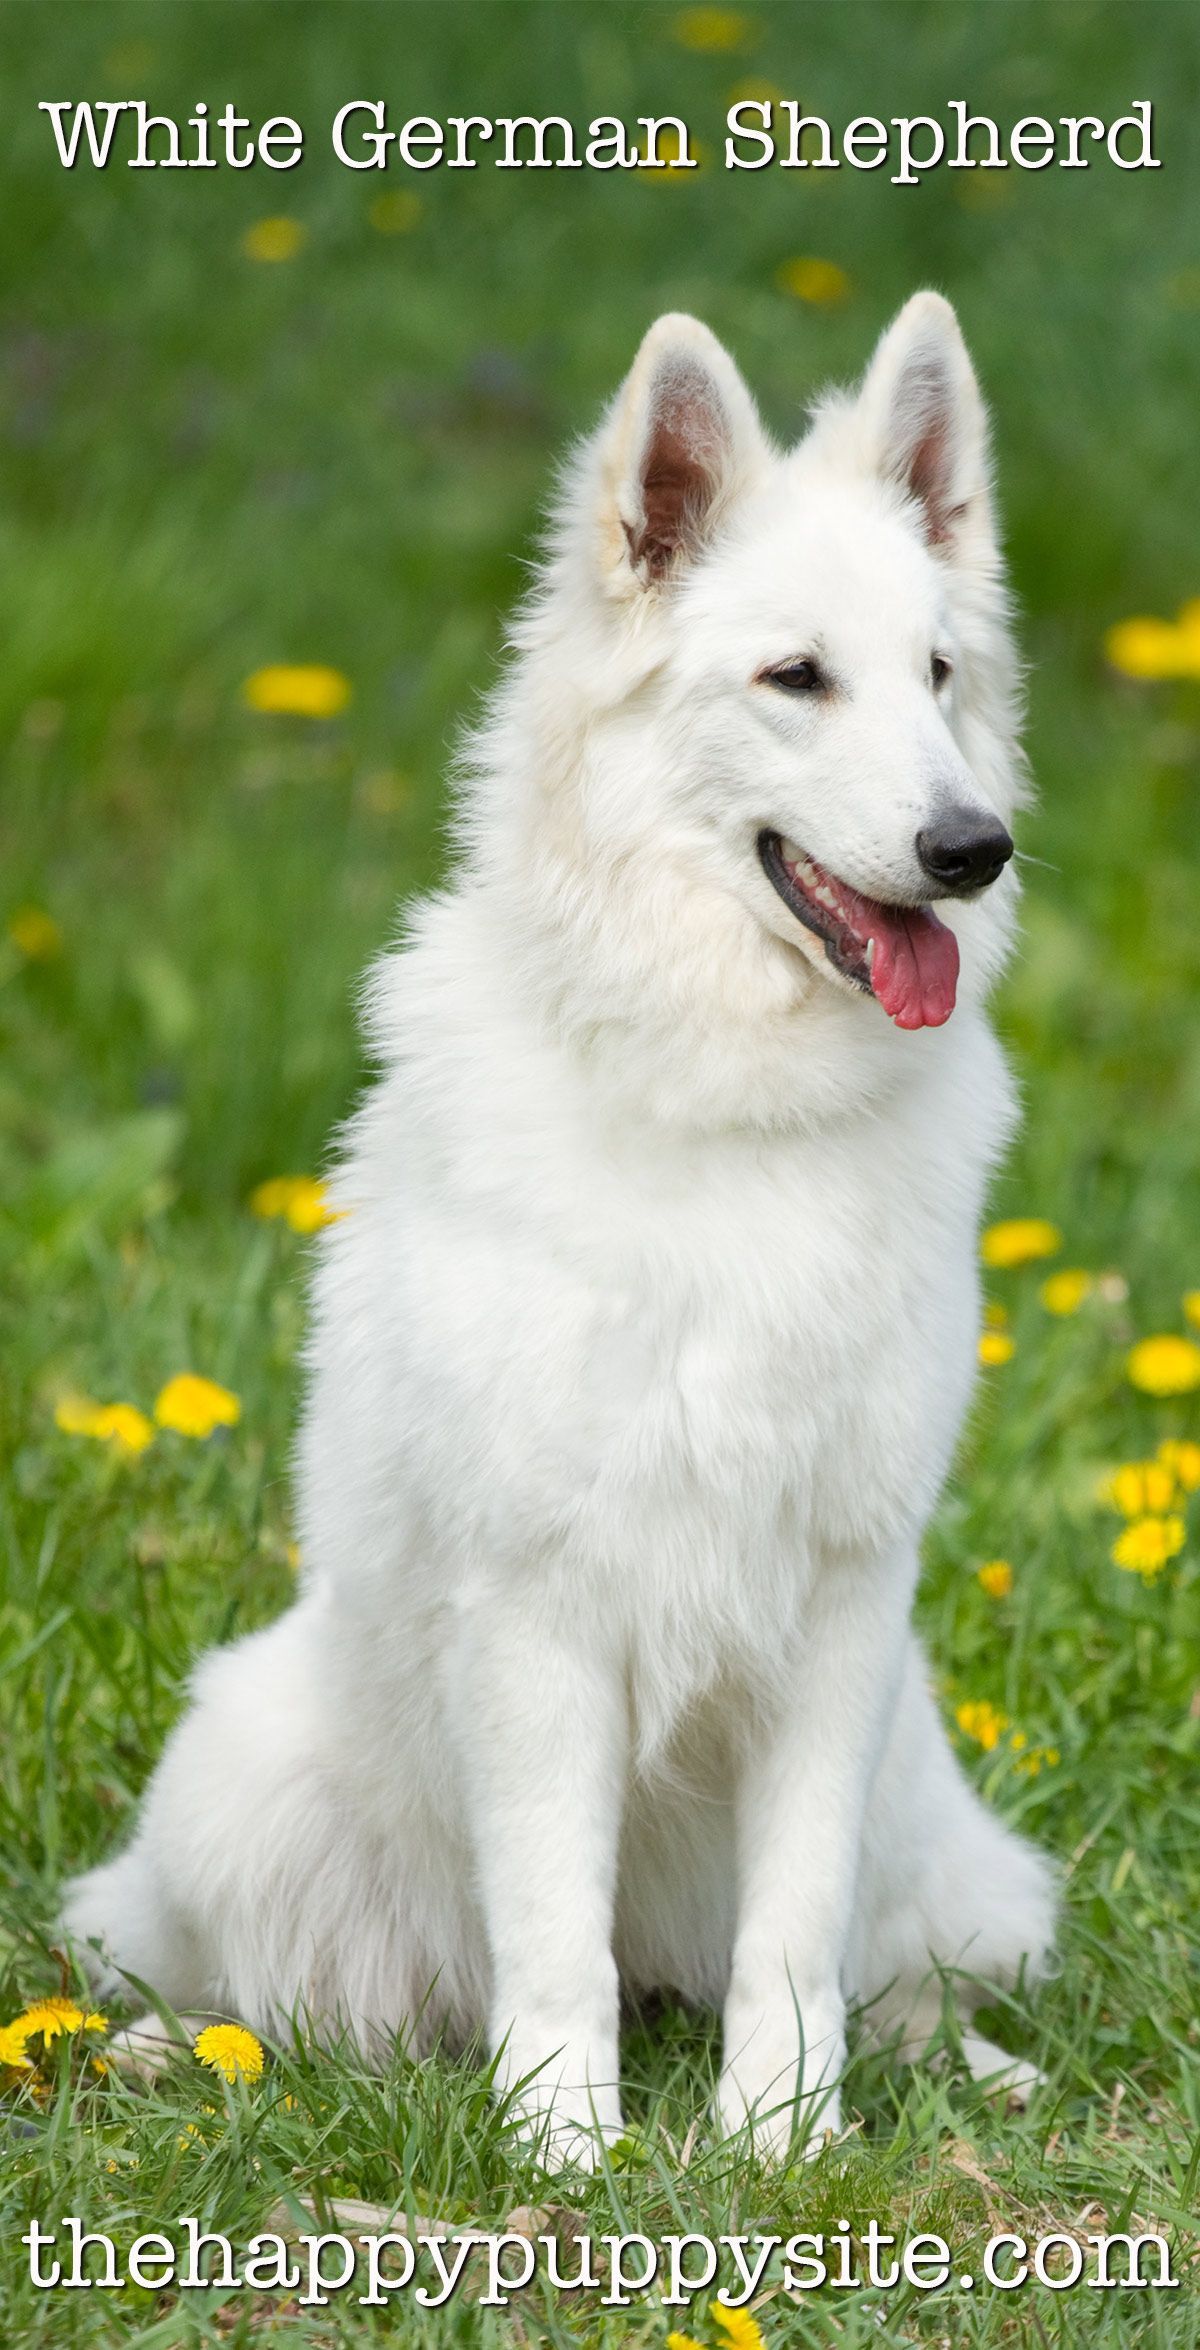 Witte Duitse herdershonden